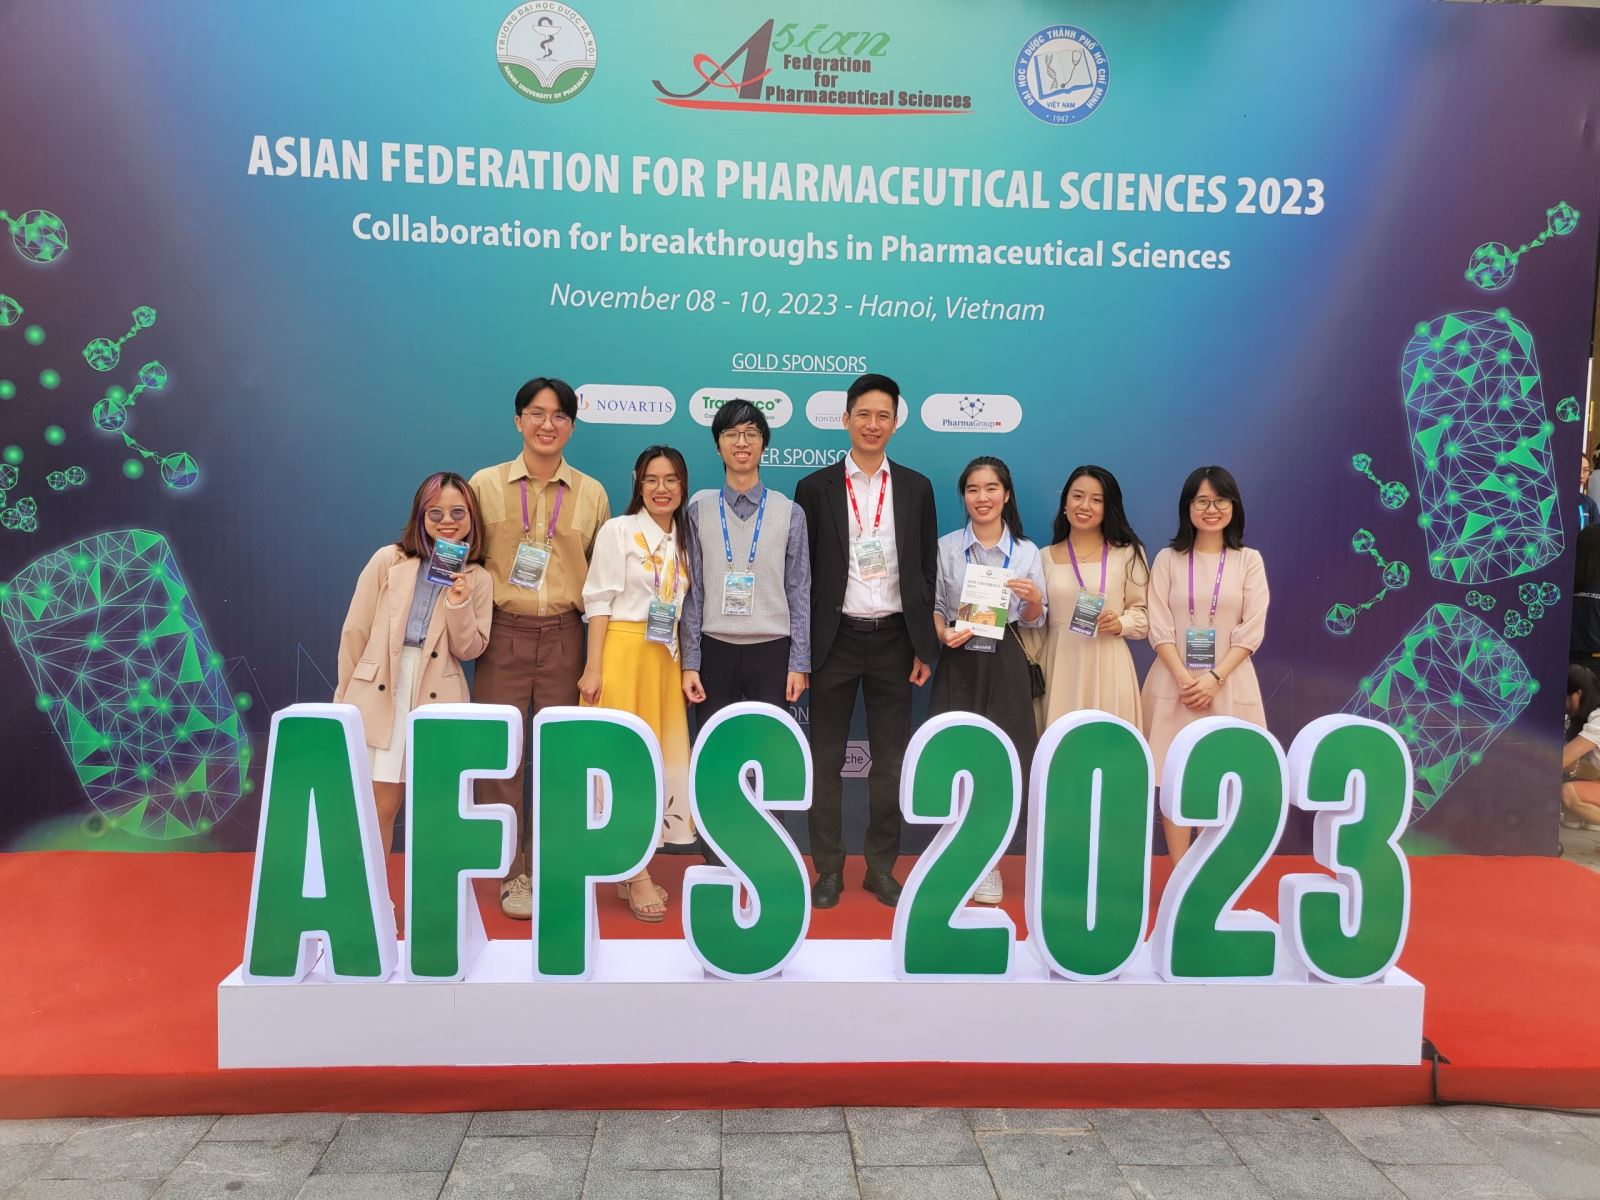 Trung tâm DI&ADR Quốc gia tham gia báo cáo khoa học tại Hội nghị Khoa học Dược Châu Á 2023 (AFPS 2023)